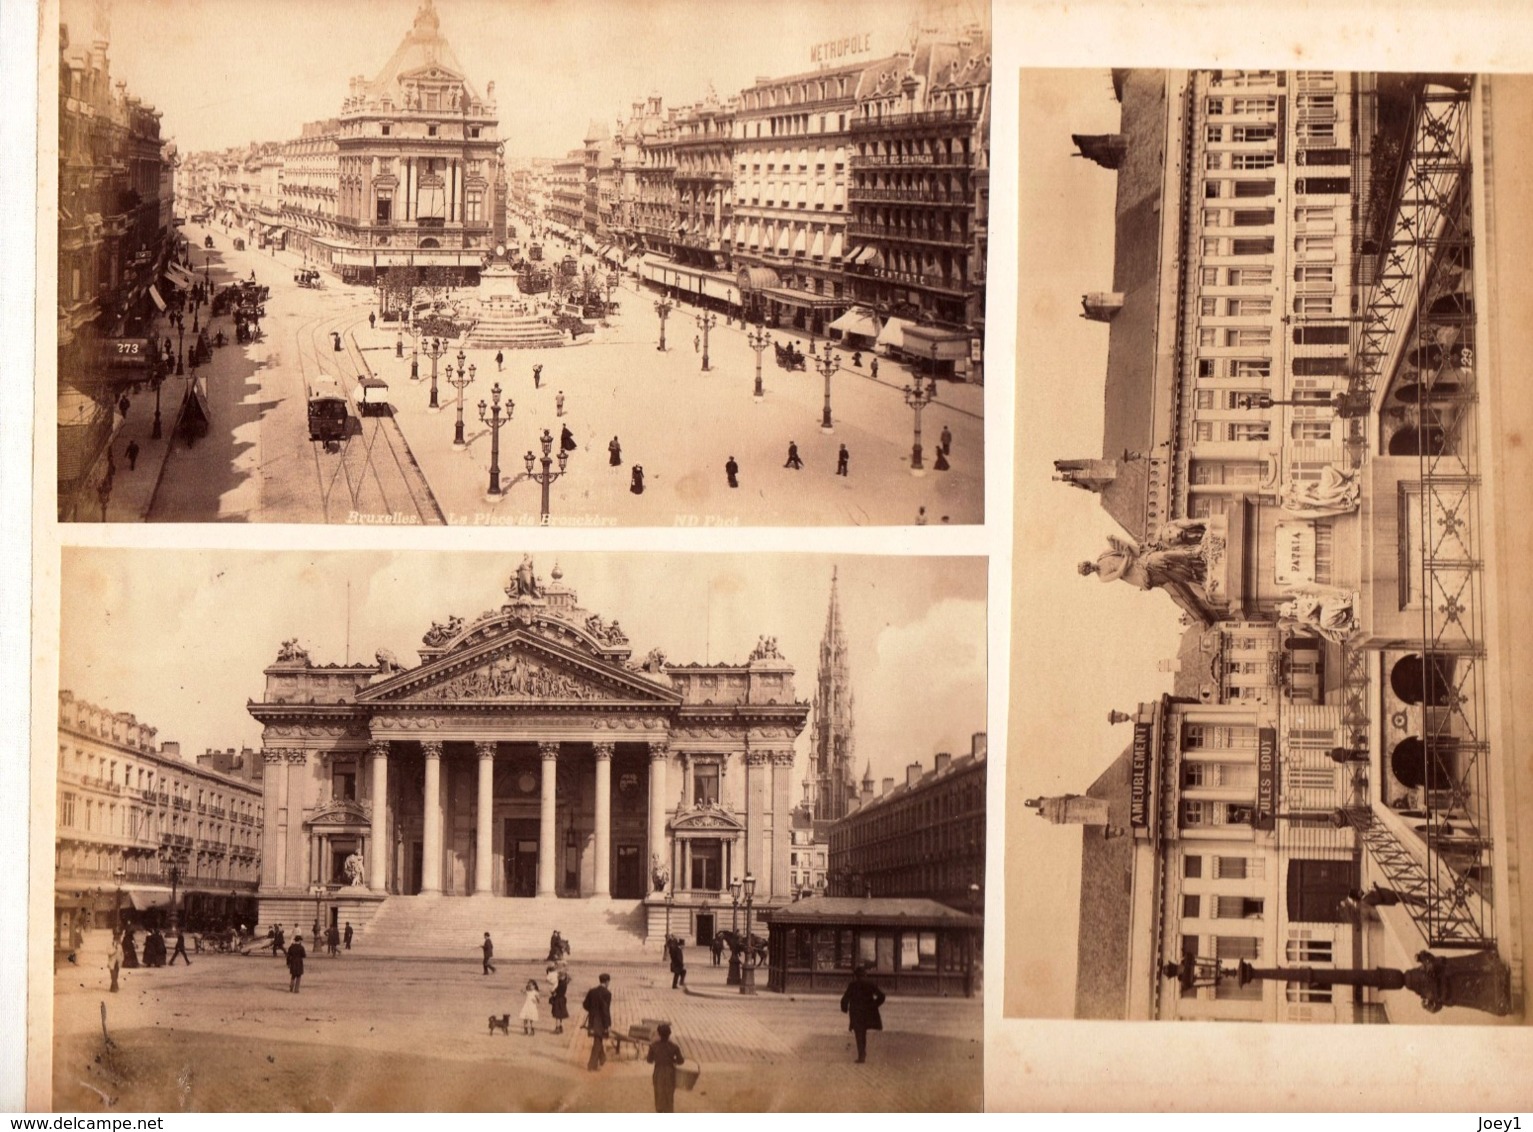 Photo Albuminée Bruxelles Format 27/21 Contre Collé Sur Carton 5 Photos Recto Verso - Oud (voor 1900)